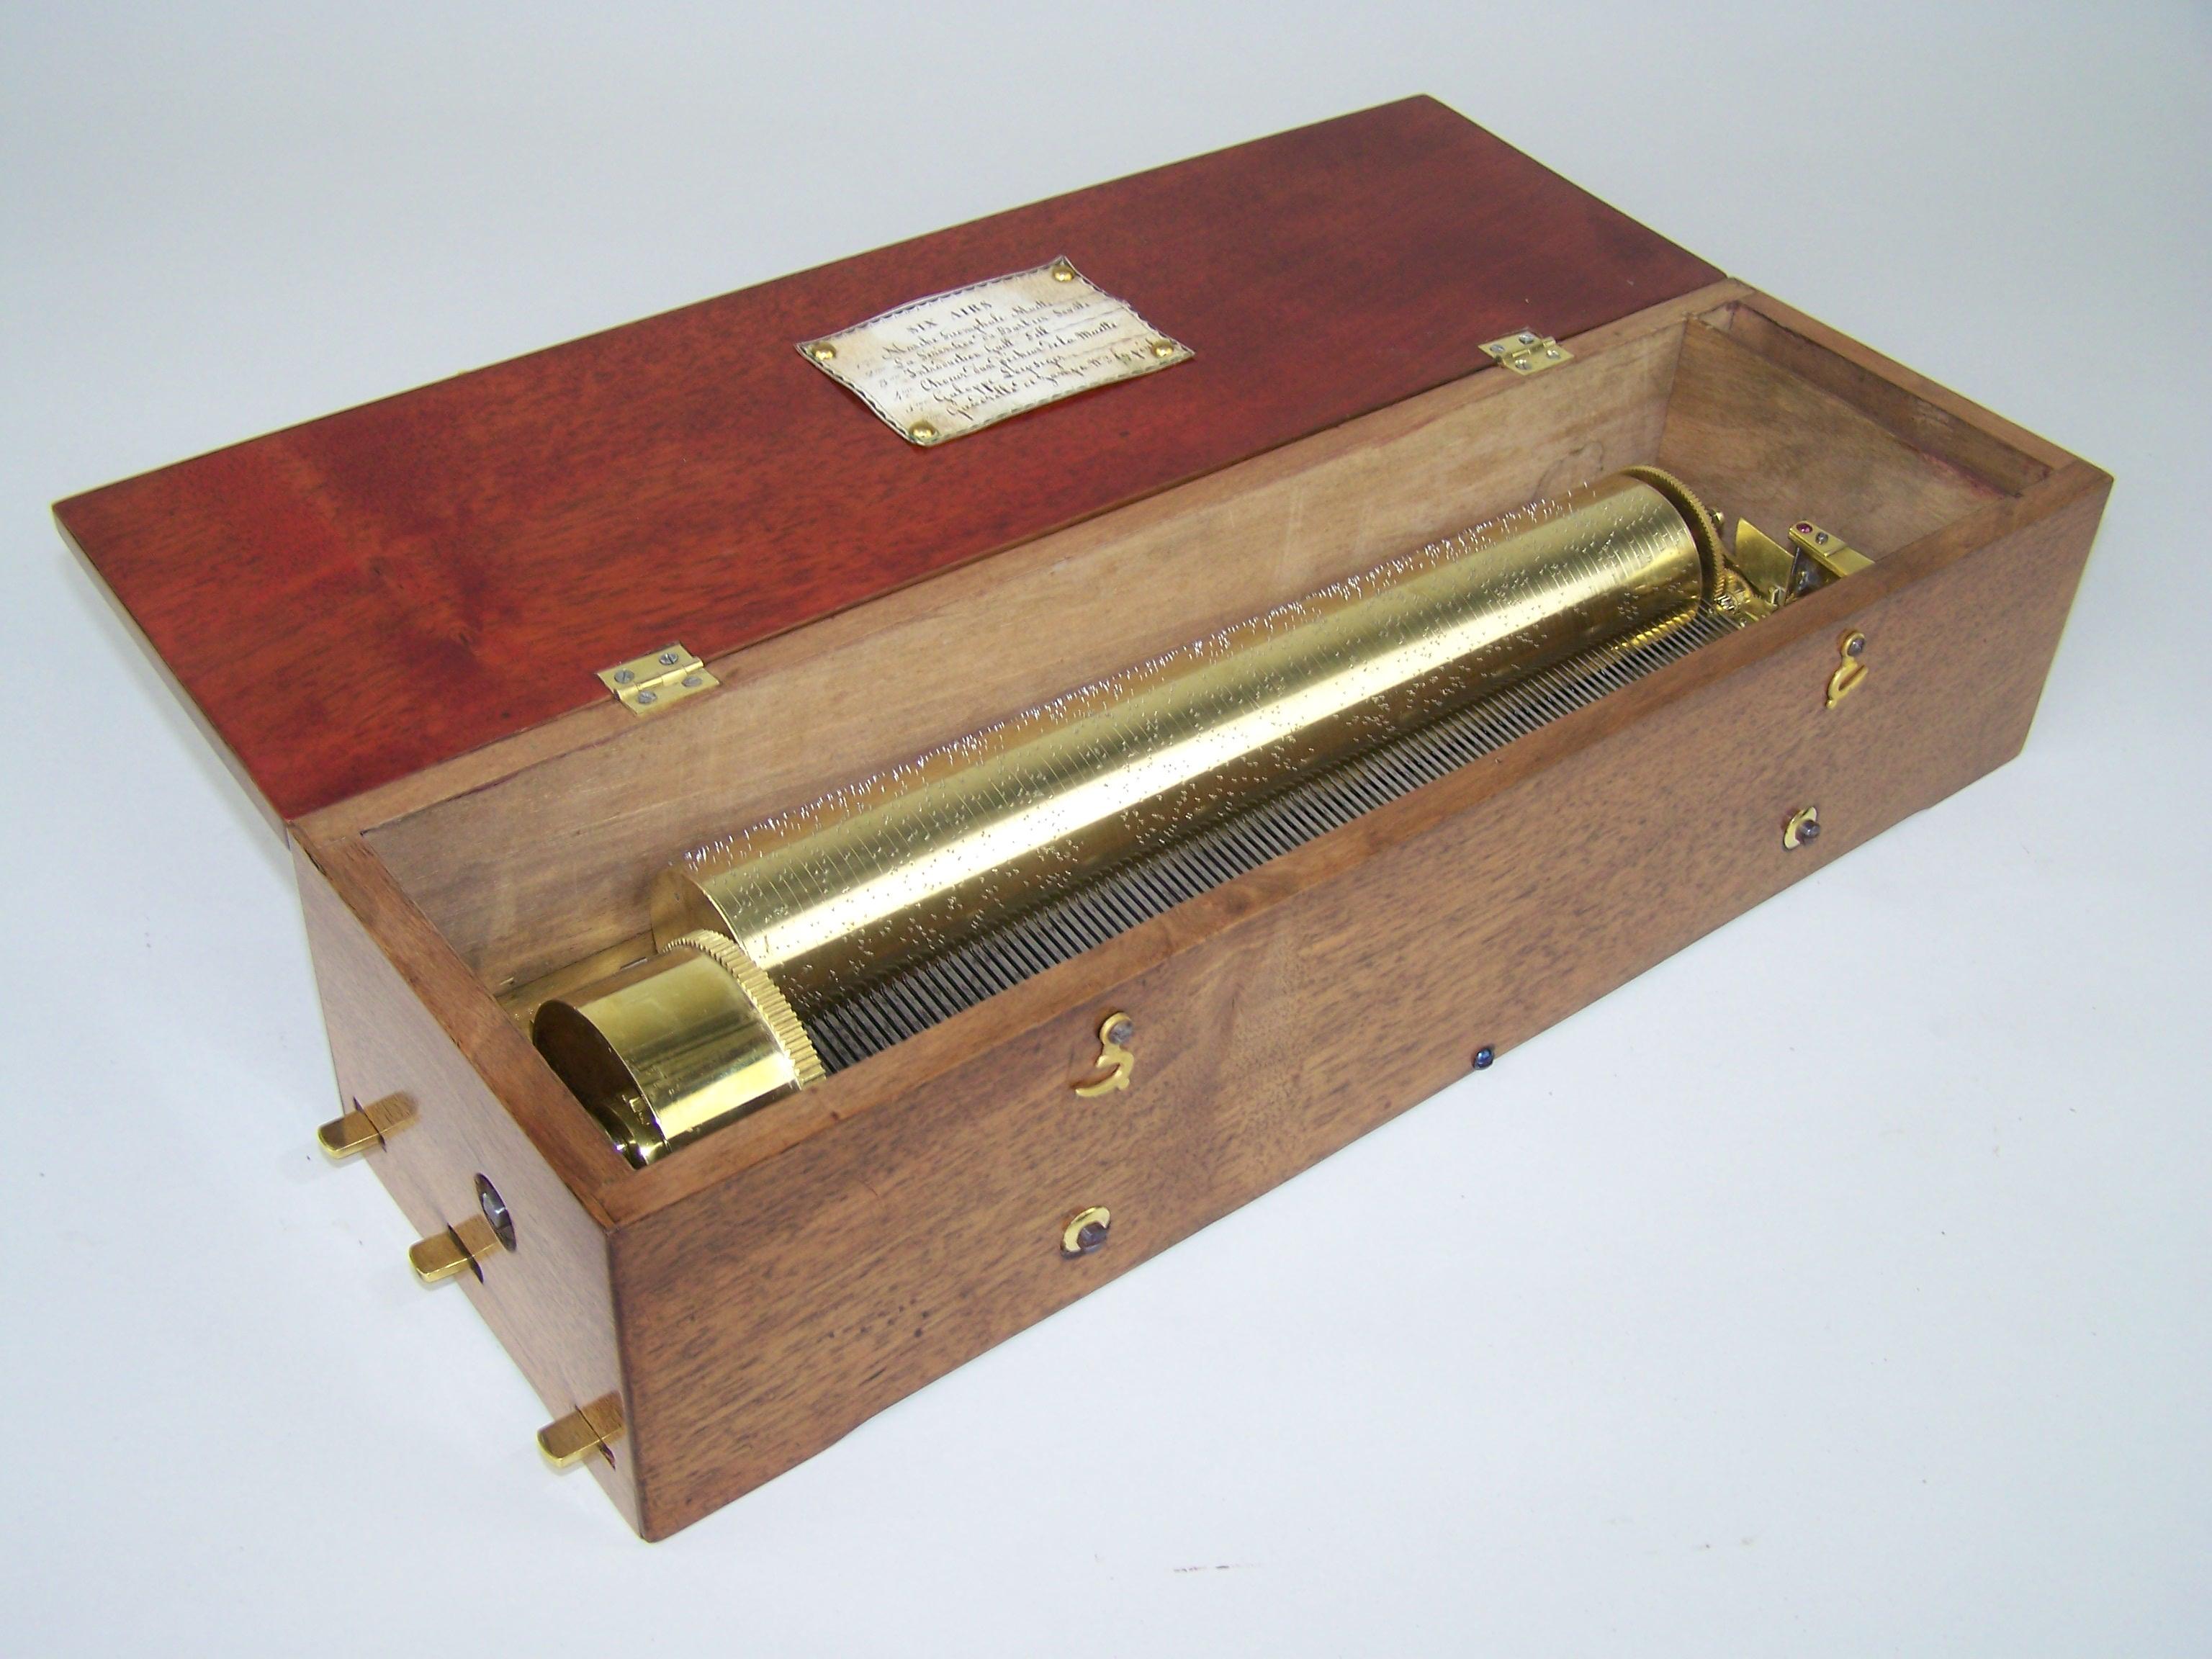 Schöne, frühe und seltene Spieldose aus dem frühen 19. Jahrhundert. Diese frühe Spieldose spielt 6 Melodien auf einem 25,7 cm langen Zylinder. Zu Beginn des 19. Jahrhunderts wurden Dosen von hervorragender musikalischer Qualität gebaut. Diese